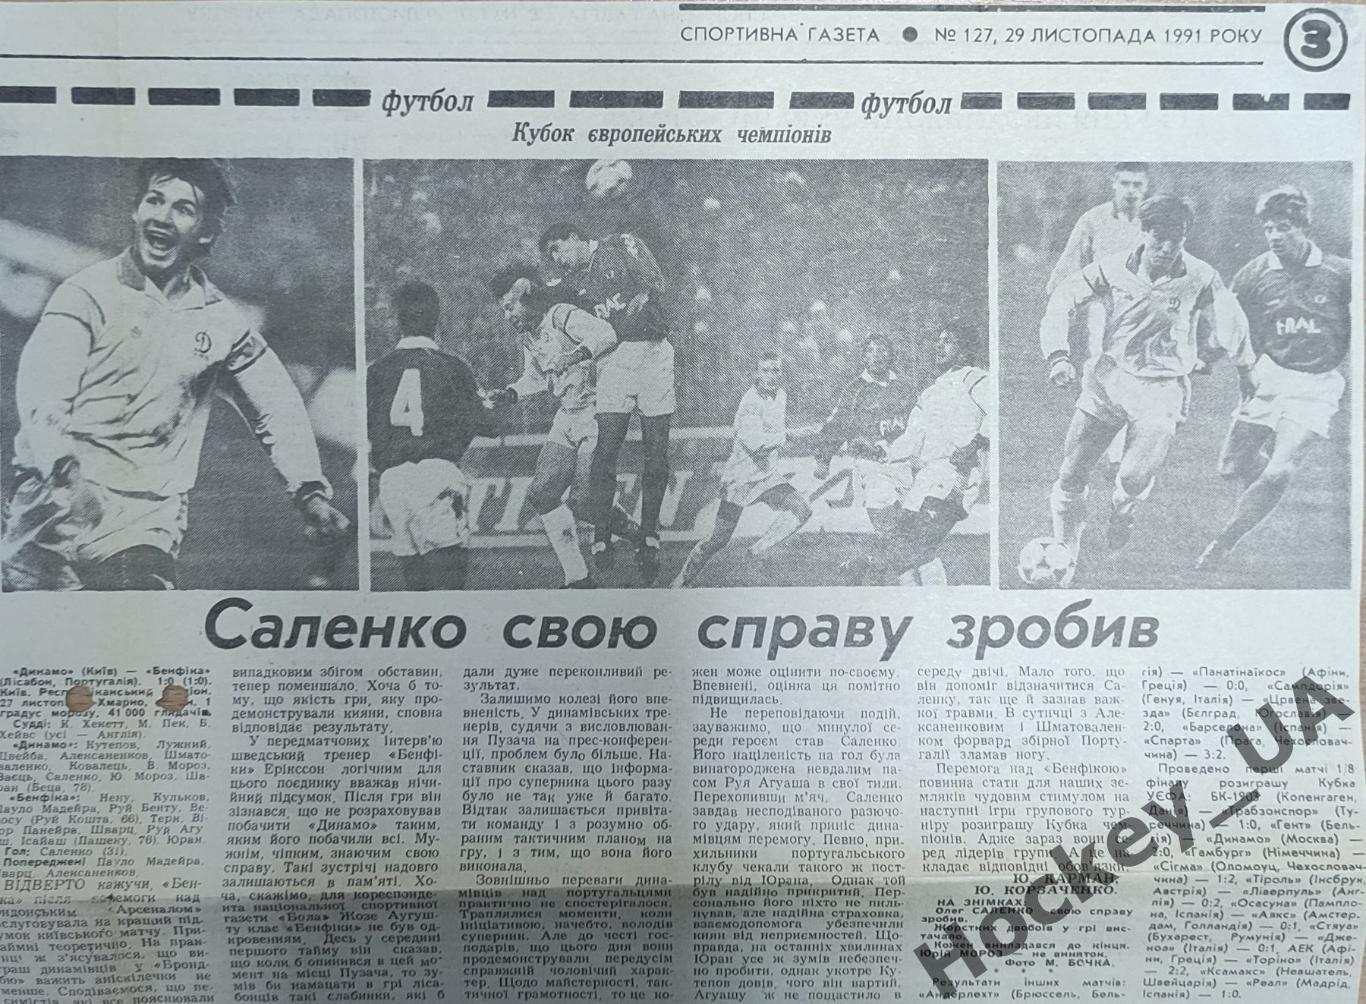 Статья Саленко свою справу зробив Спортивная газета №127, 29.11.1991